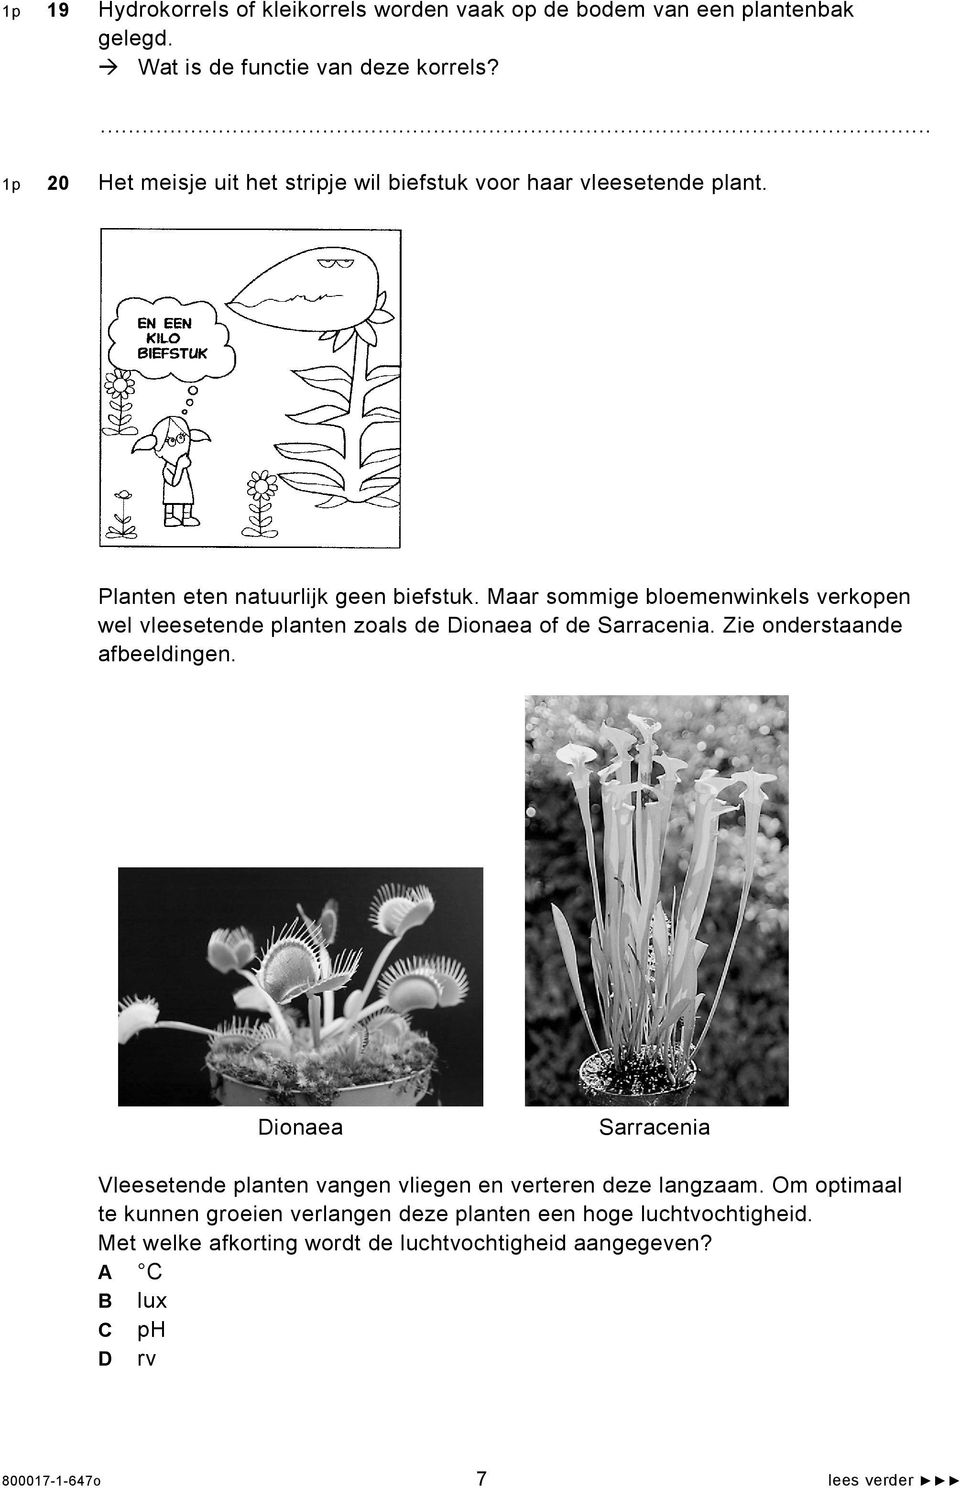 Maar sommige bloemenwinkels verkopen wel vleesetende planten zoals de Dionaea of de Sarracenia. Zie onderstaande afbeeldingen.